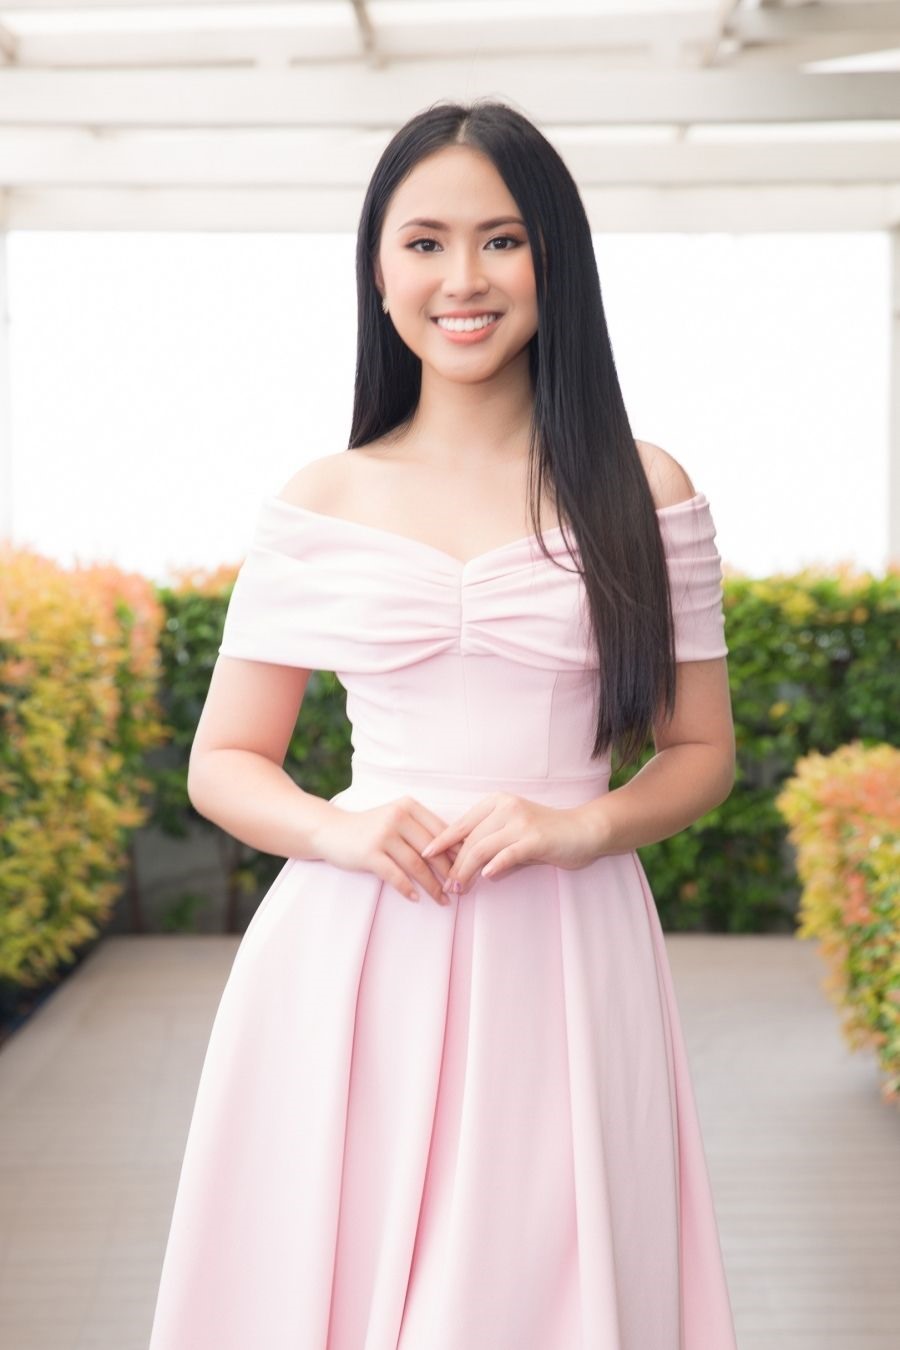 Bảo Nghi cho rằng Hoa hậu Việt Nam 2020 là một trải nghiệm mới đối với bản thân. Mặc dù vậy, cô sẽ đặt ra mục tiêu cụ thể cho bản thân để nghiêm túc nỗ lực, vươn tới thành công. Ảnh: NVCC.